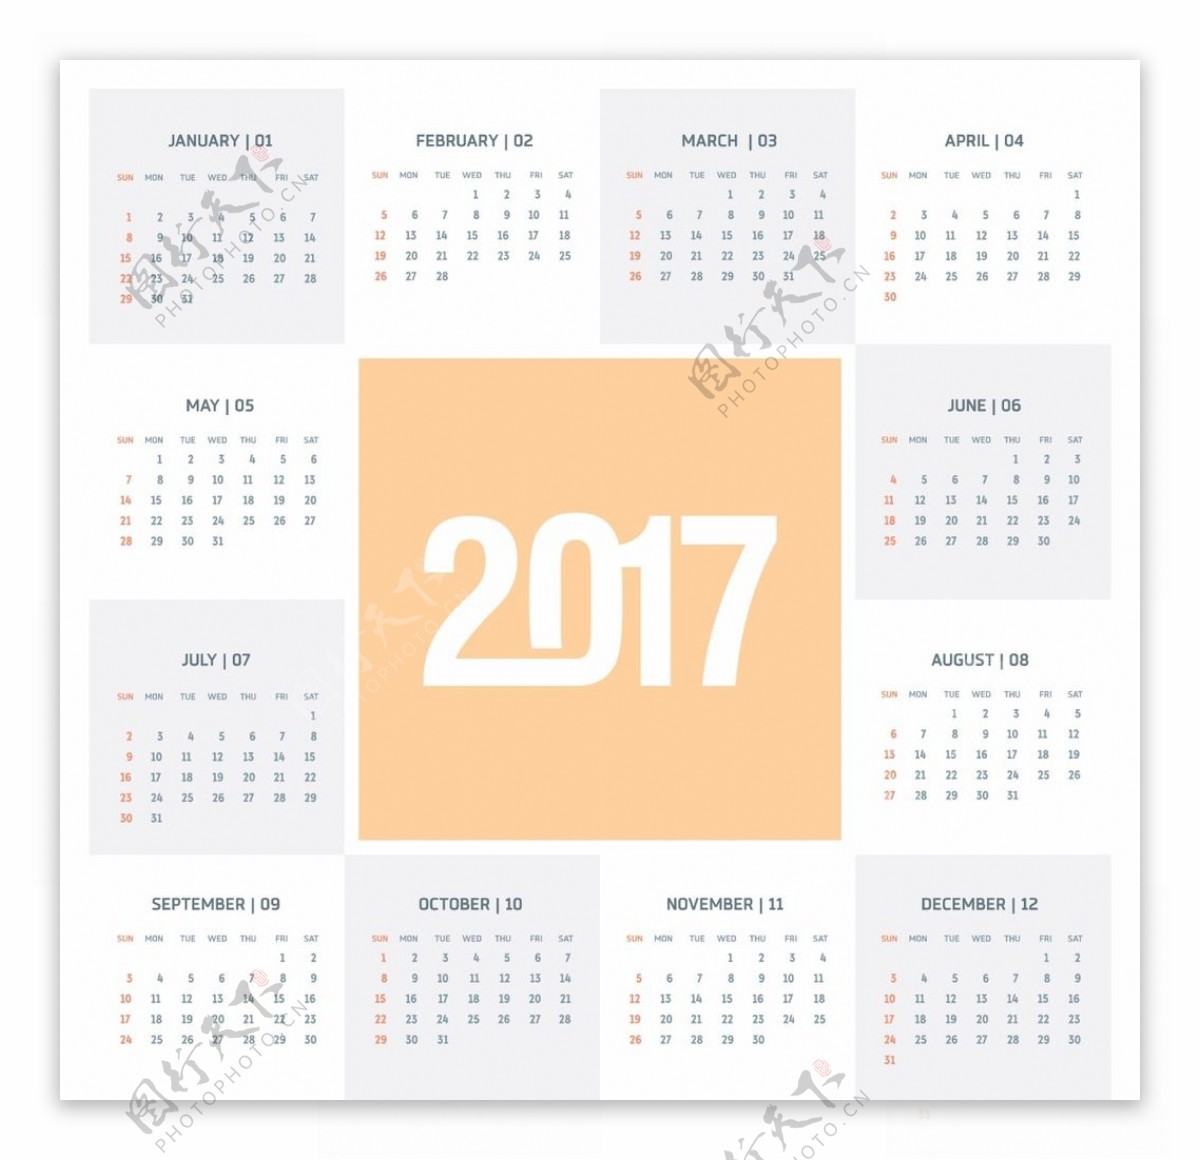 2017年日曆月曆